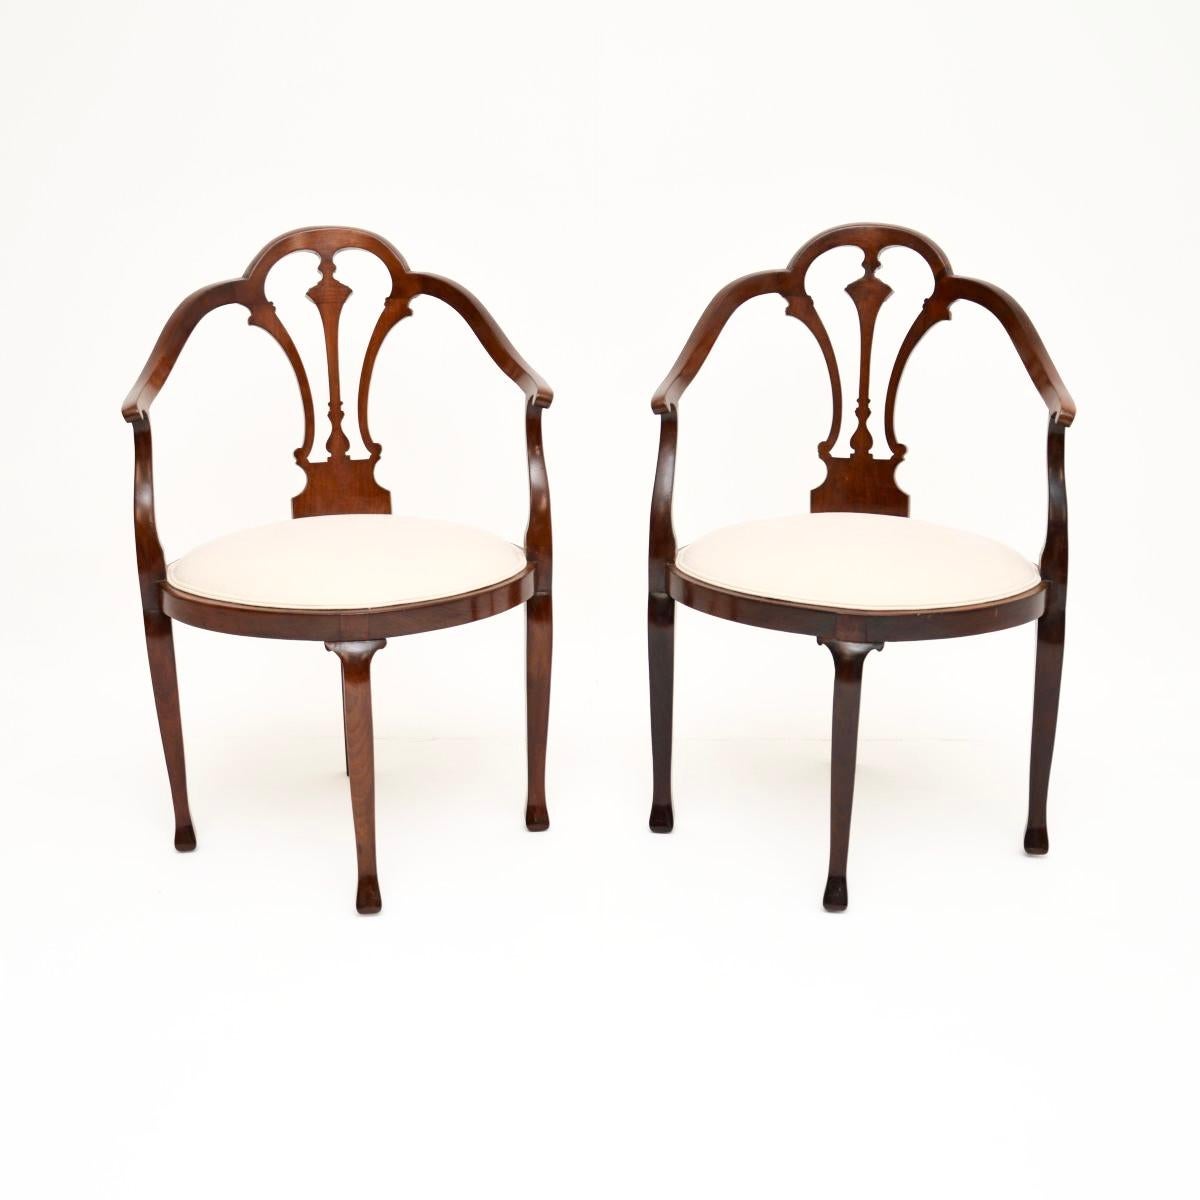 Ein schönes Paar antiker offener Edwardianischer Sessel. Sie wurden in England hergestellt und stammen aus der Zeit zwischen 1900 und 1910.

Die Qualität ist ausgezeichnet, und sie haben eine schöne Größe. Sie eignen sich sehr gut für verschiedene